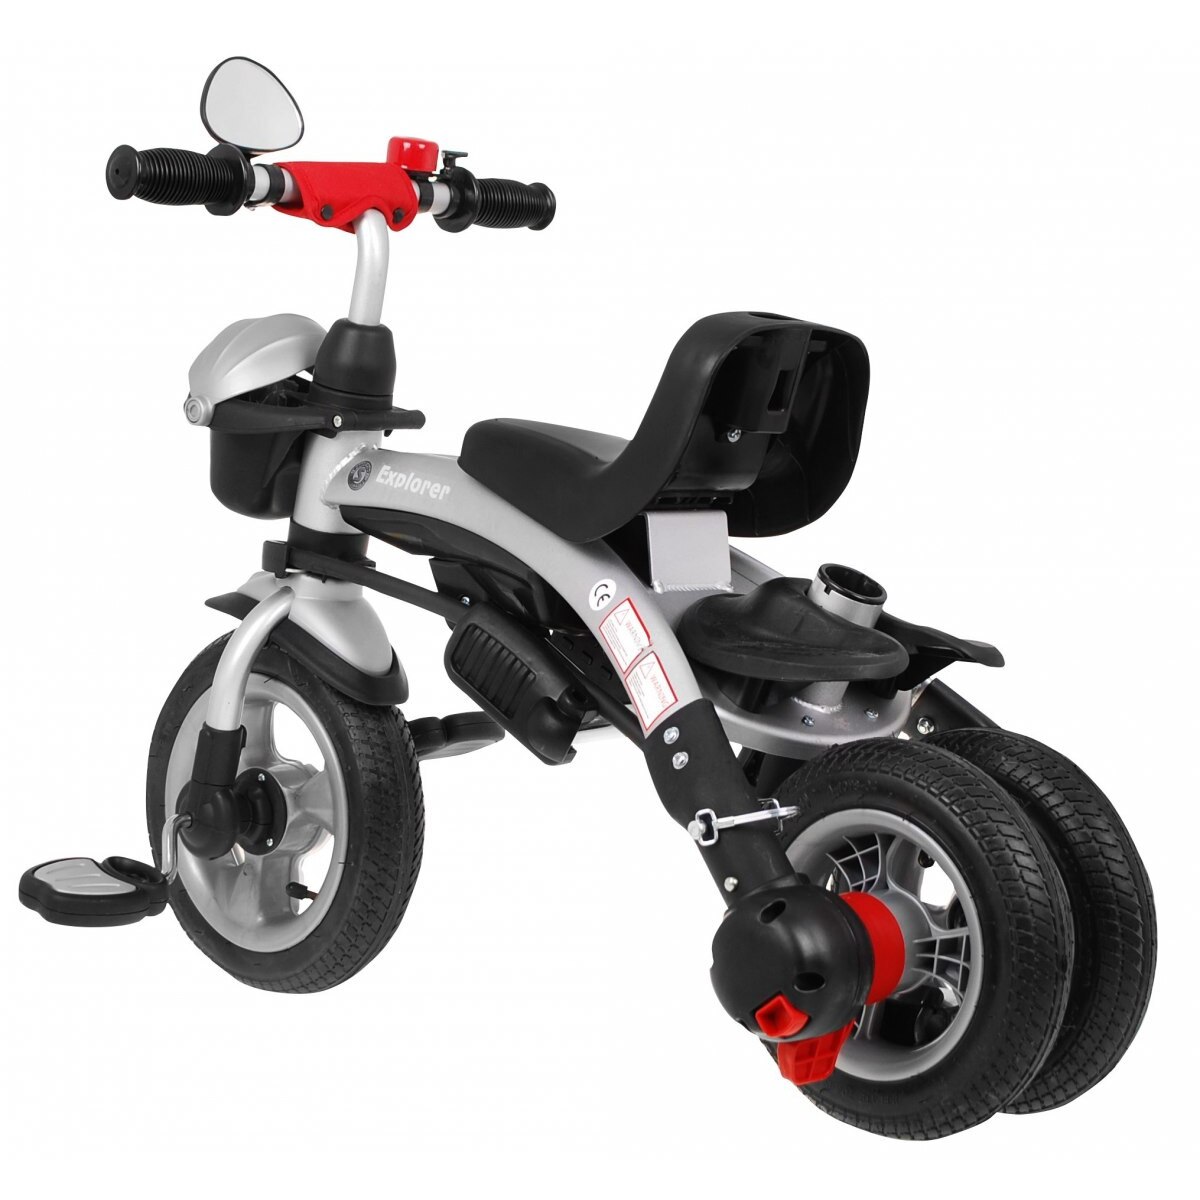 Колеса на детский трехколесный велосипед